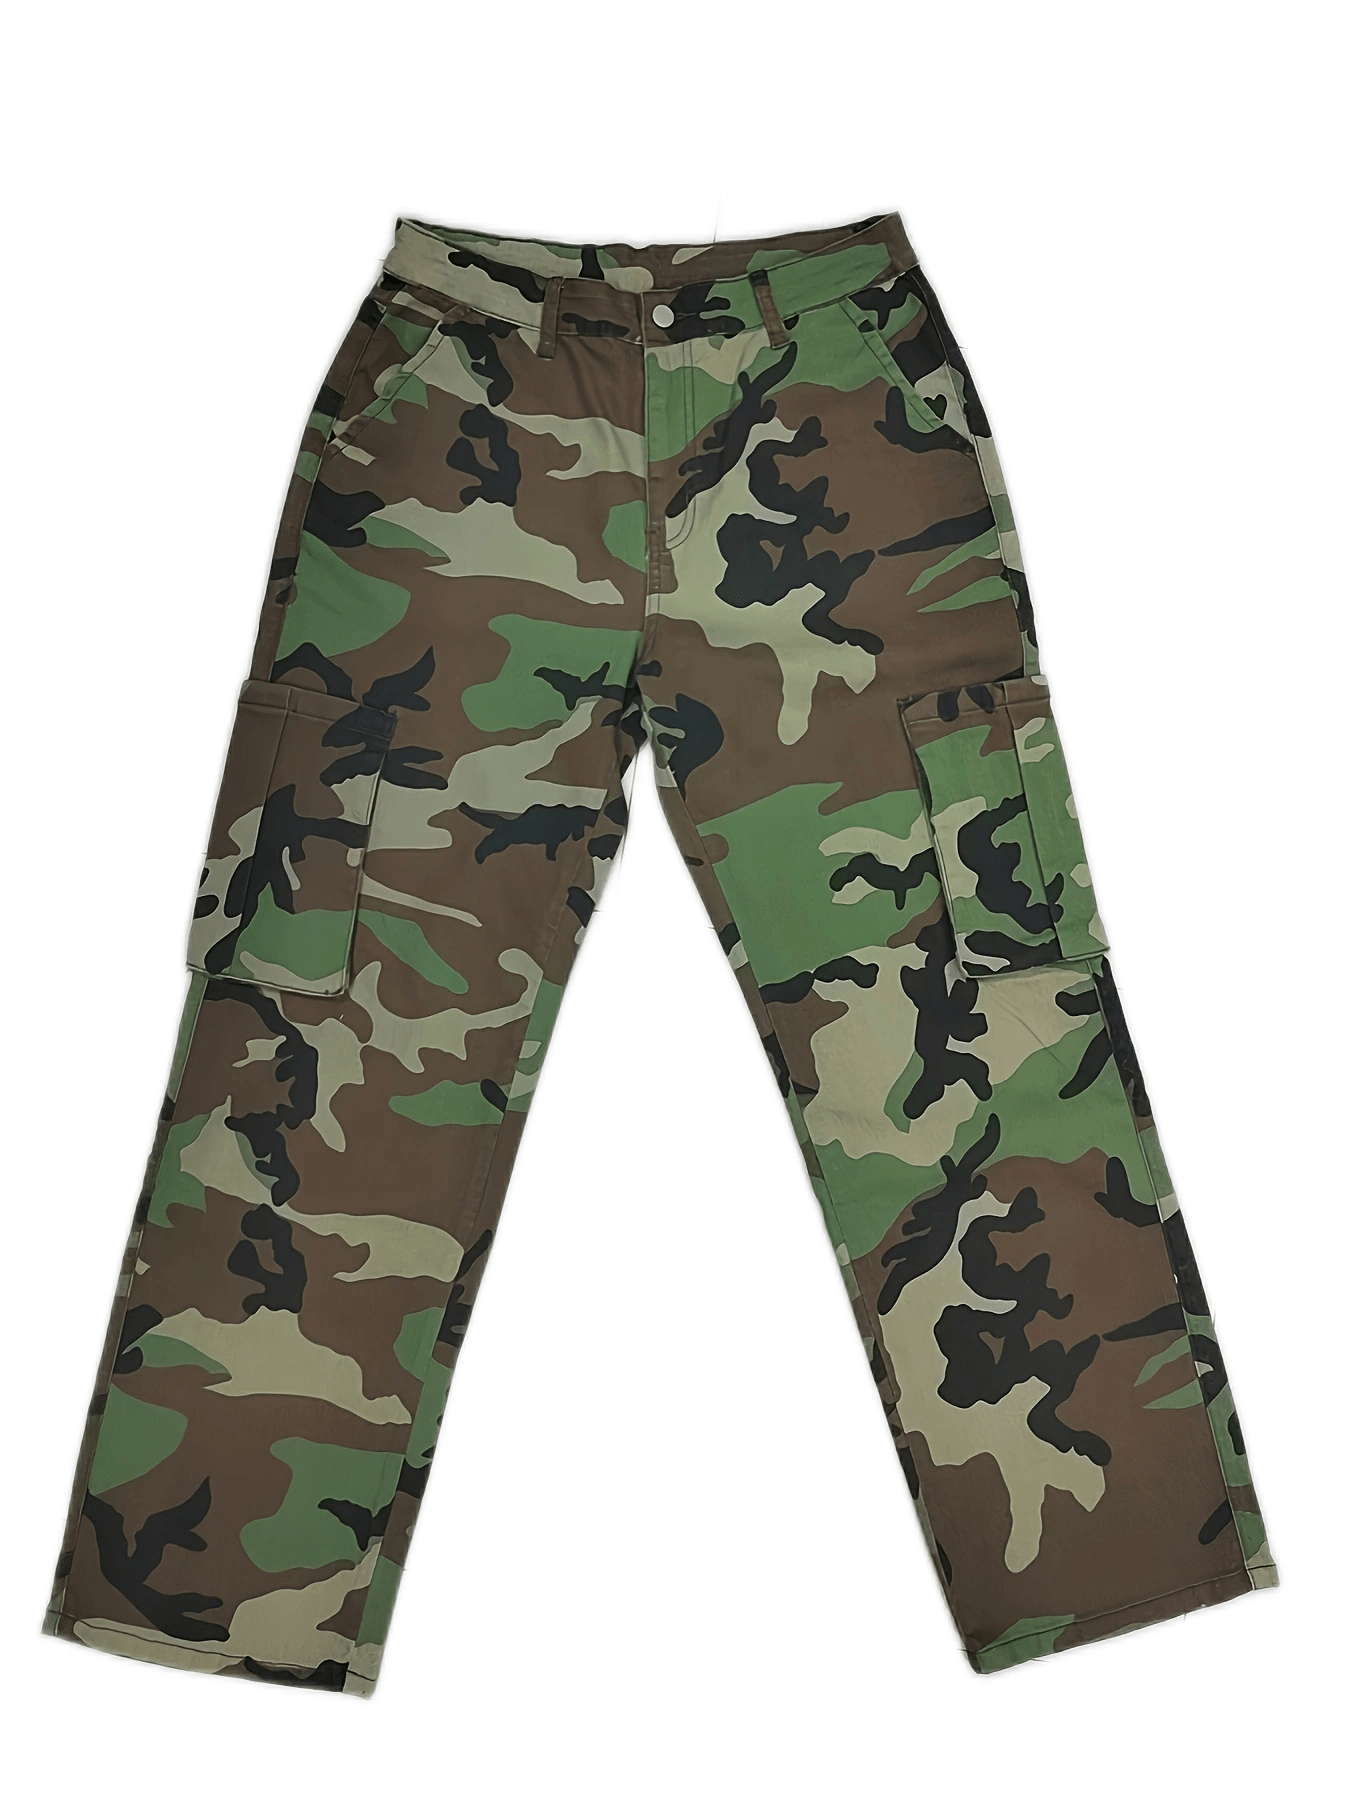 Jean jacket, army camo pants plus size fashion for women